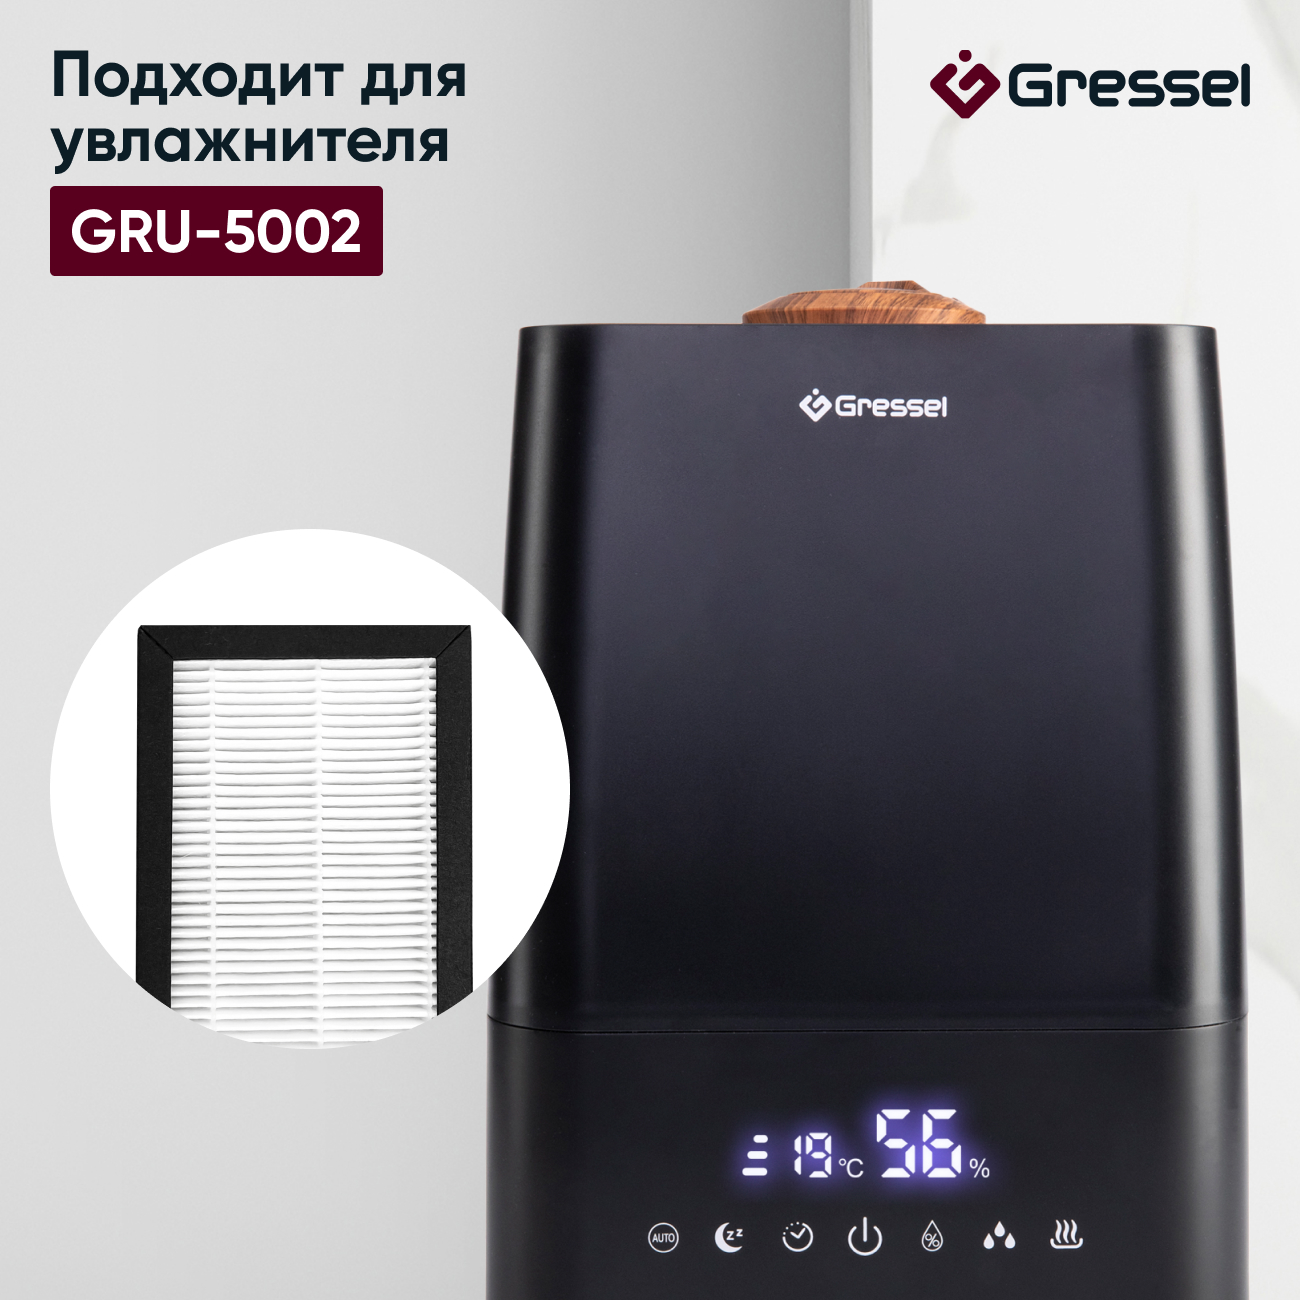 HEPA фильтр увлажнителя воздуха Gressel G-5003 для модели GRU-5002 фильтр увлажнителя воздуха gressel g 5001 для модели gru 5001